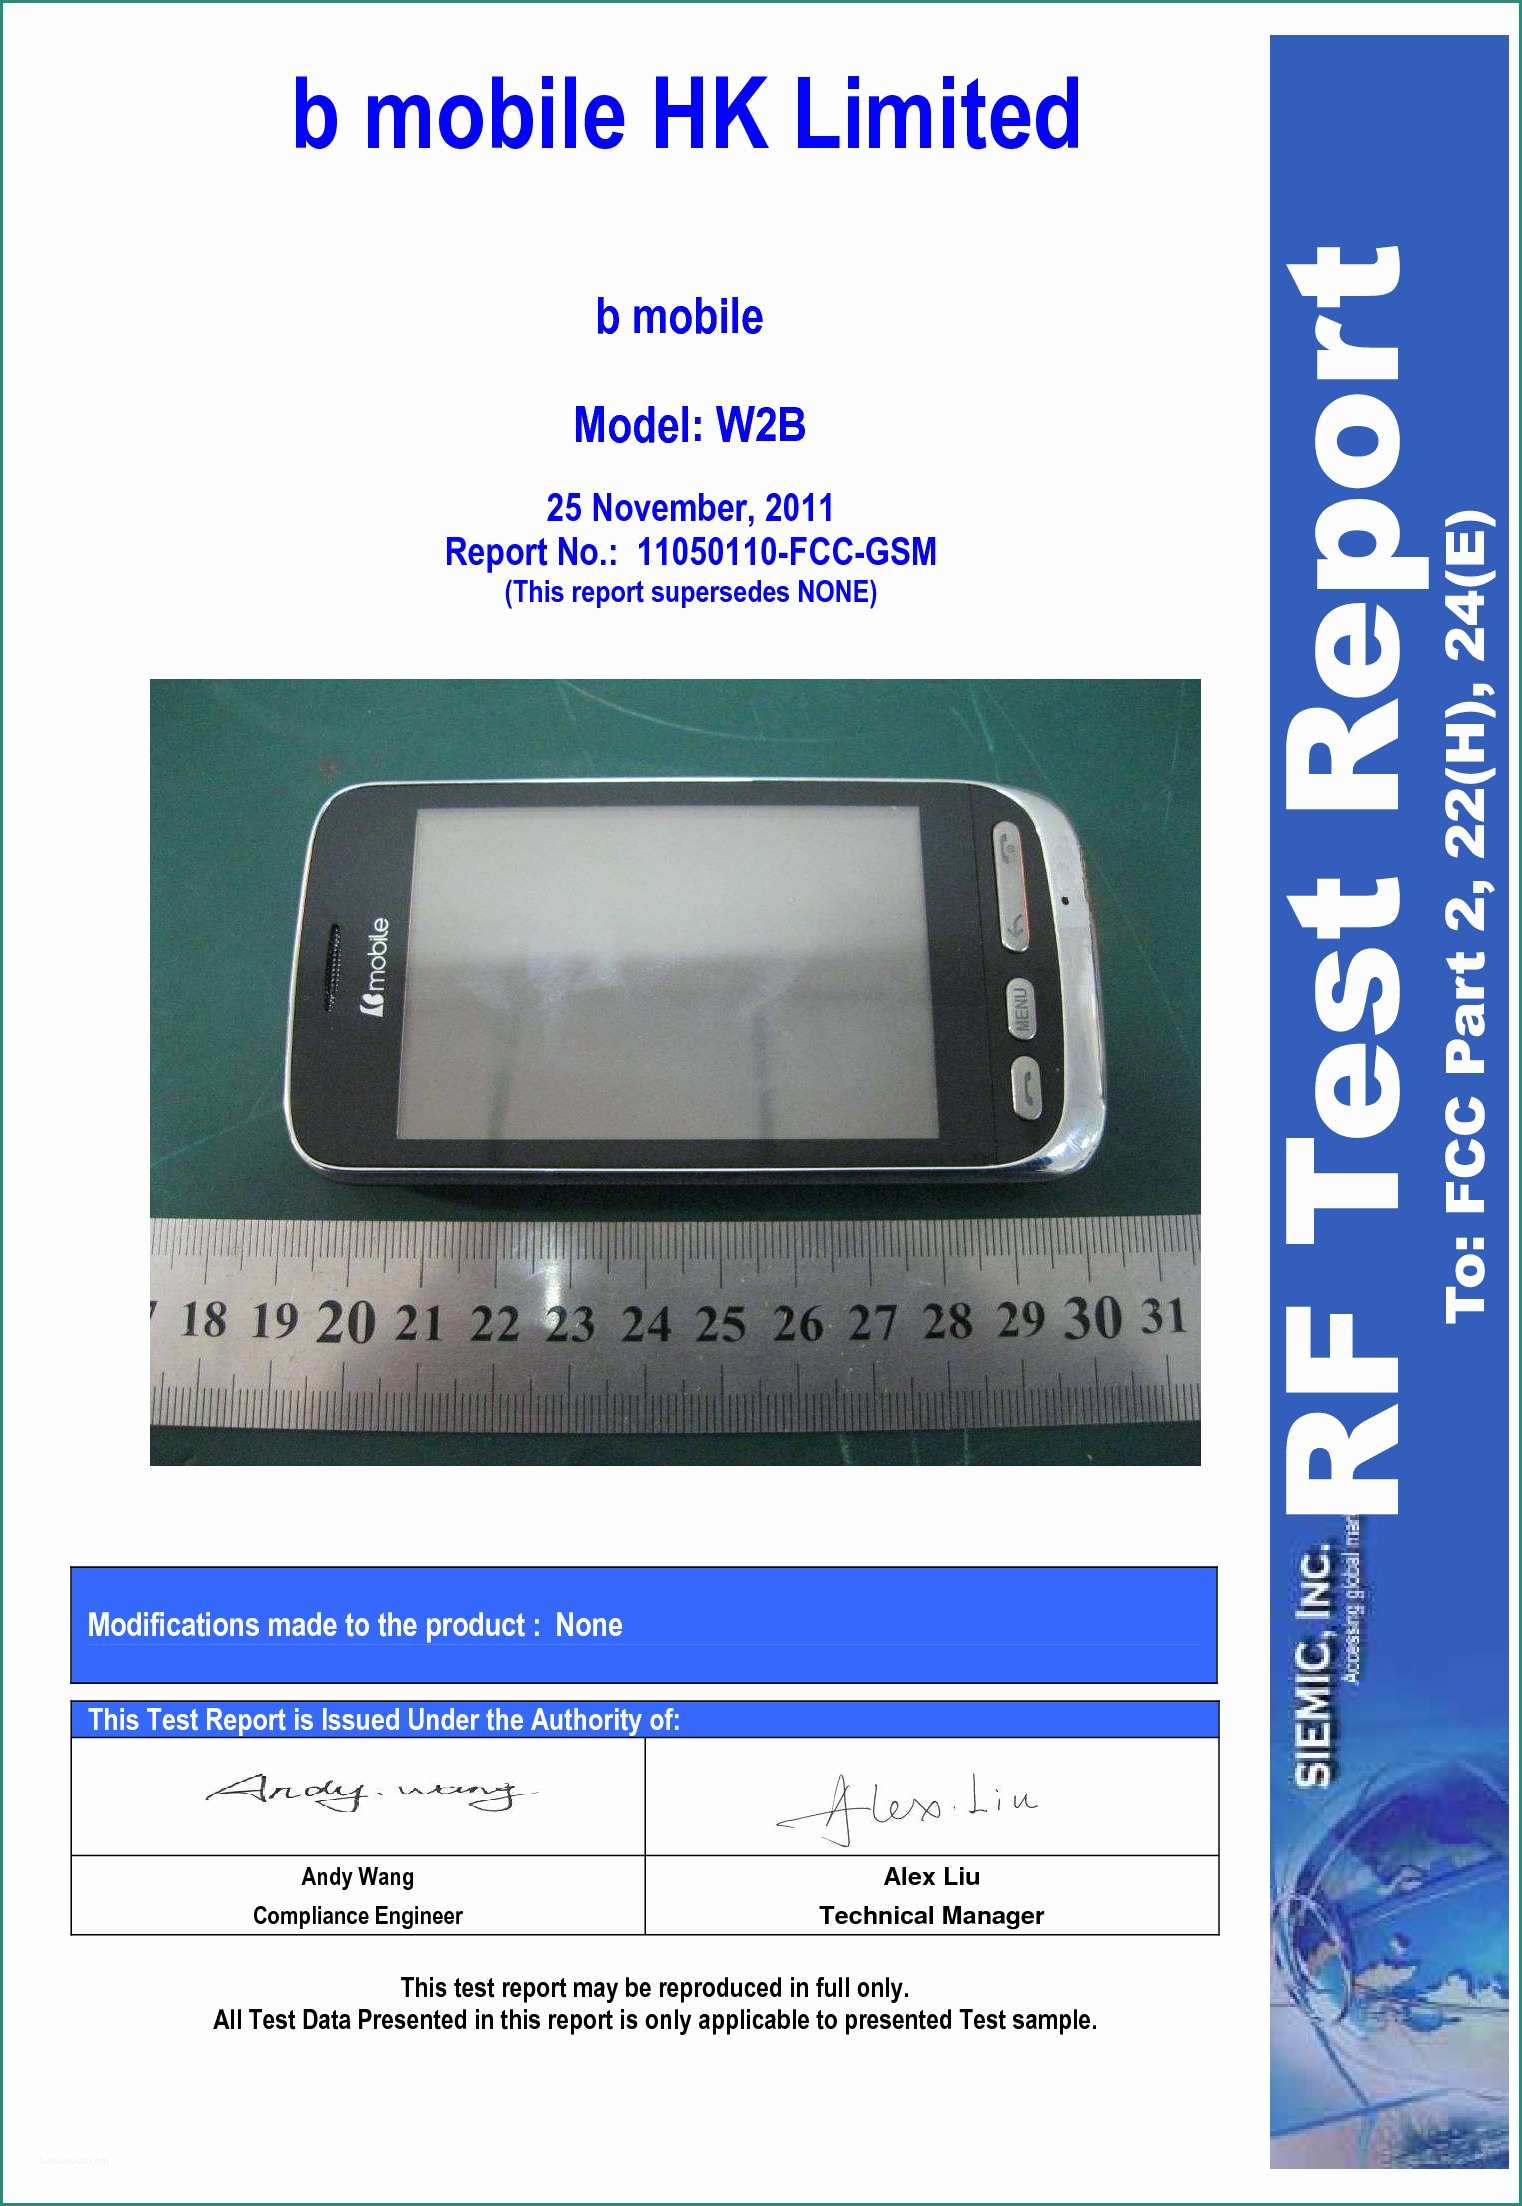 Di Fina Case Mobili E Ax340 B Mobile Test Report Part 22&24 B Mobile Hk Limited